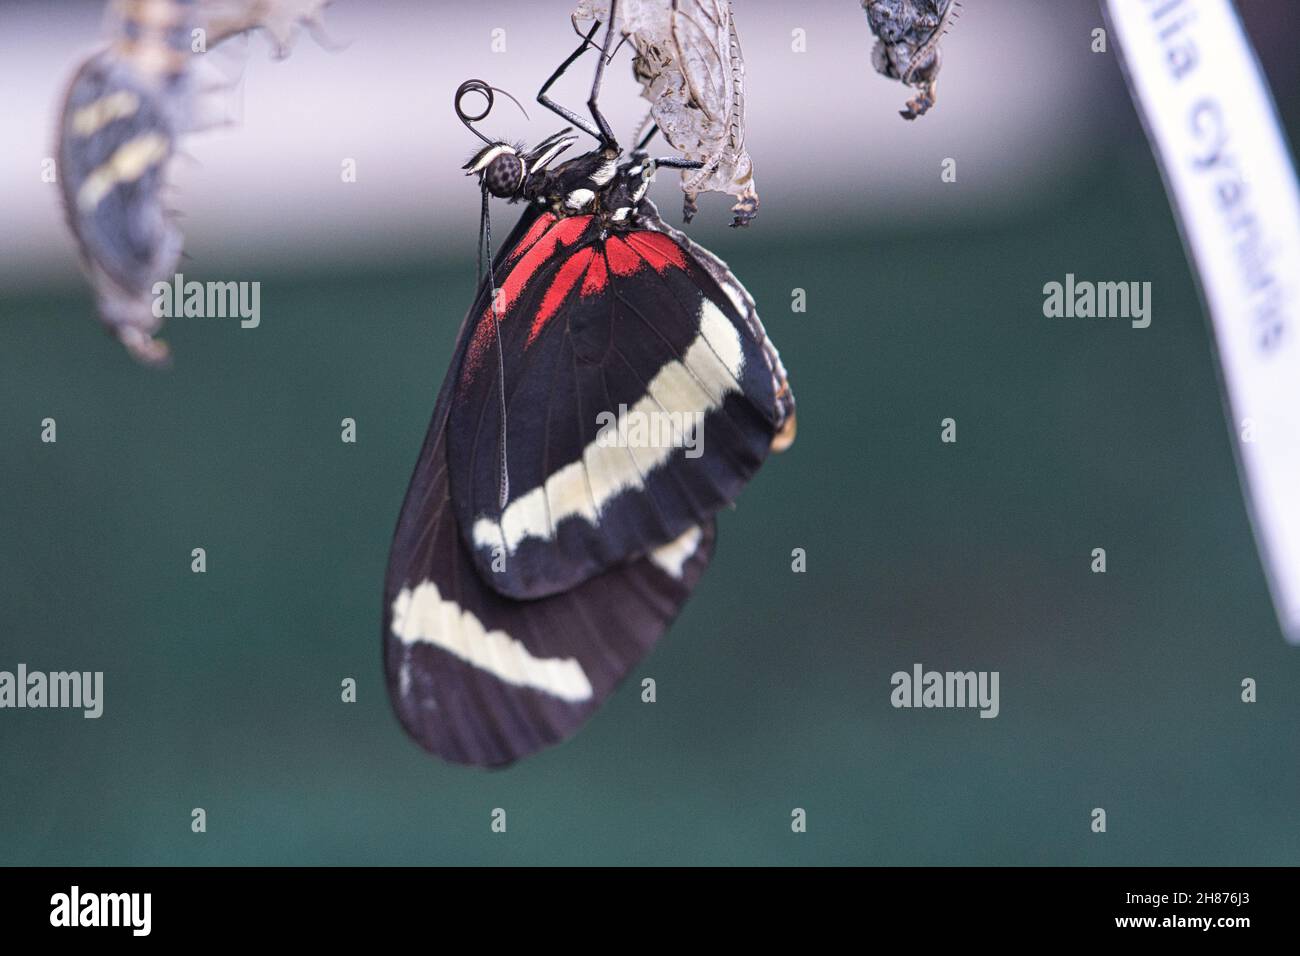 Schmetterling schlüpft aus seinem Kokon. Ein neues Insektenleben entsteht. Toll zu beobachten. Stockfoto